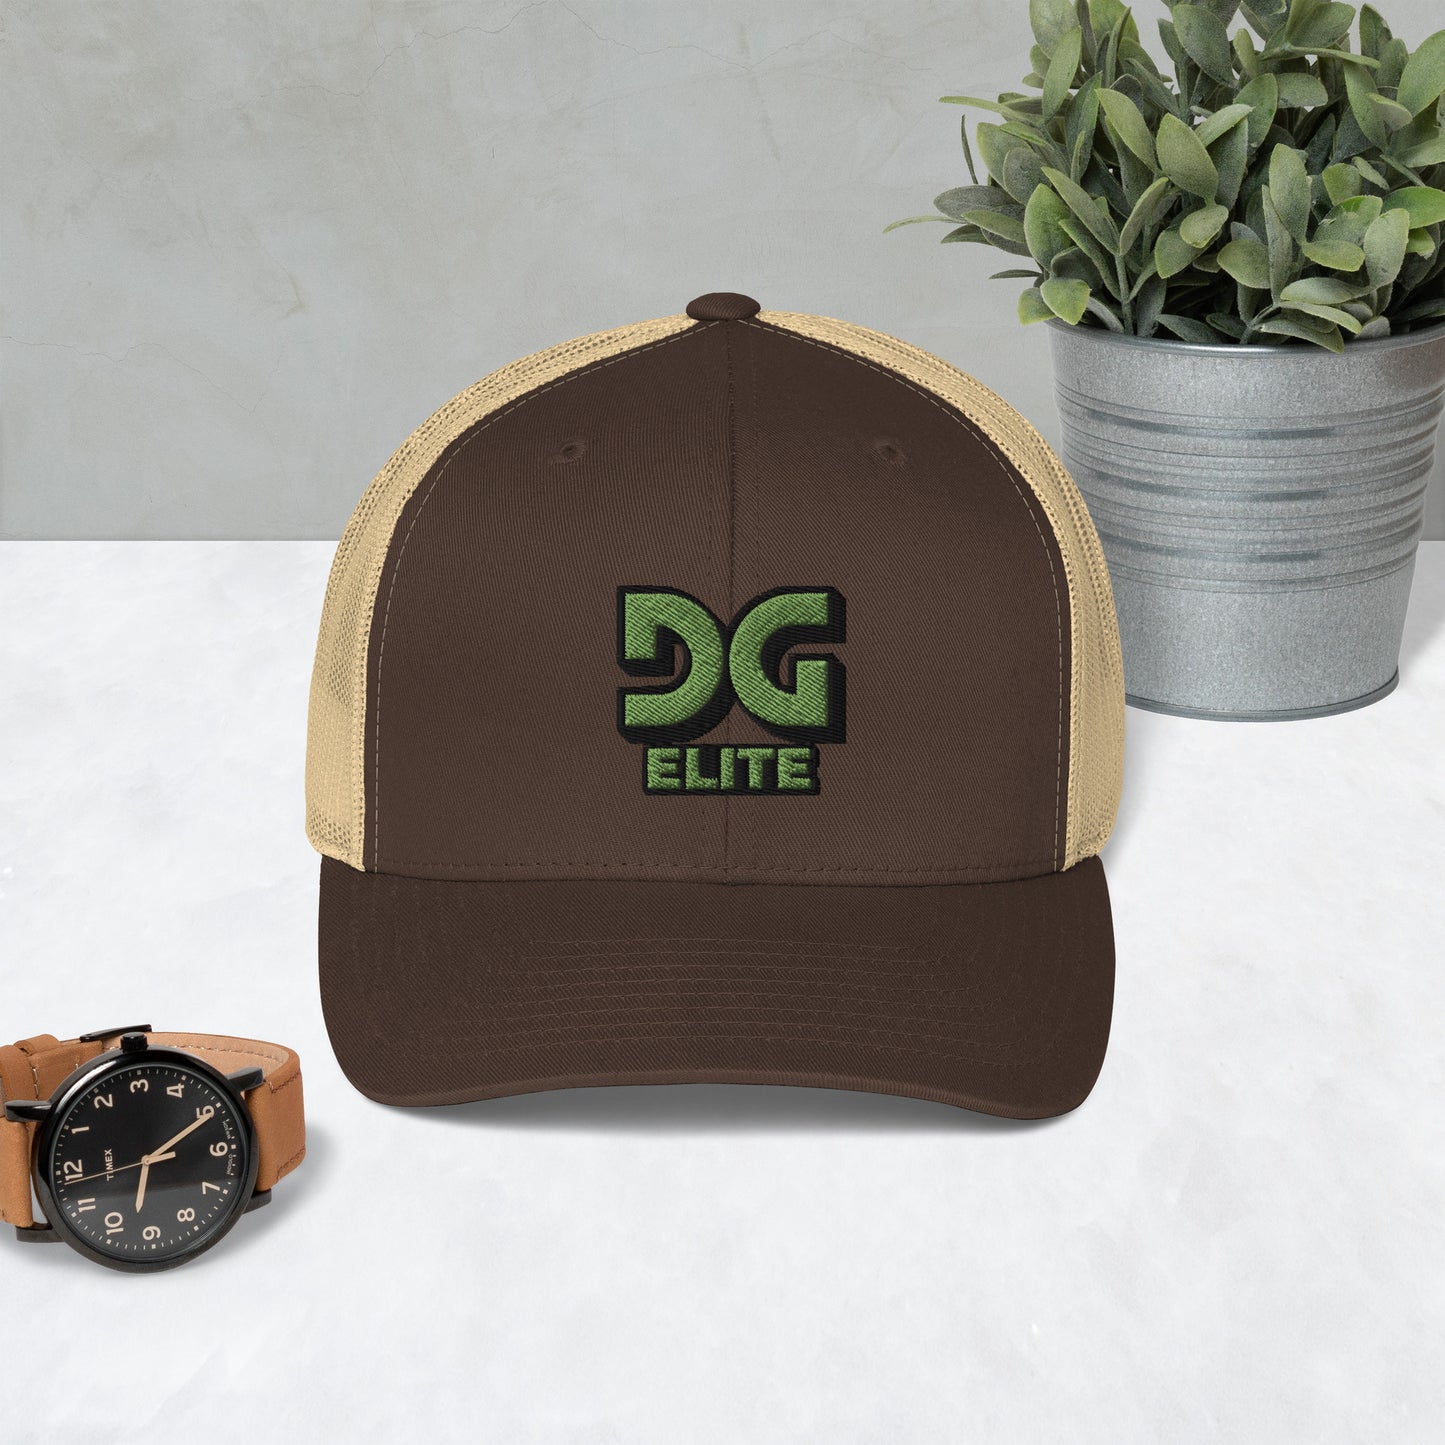 DG Elite Logo Trucker Cap